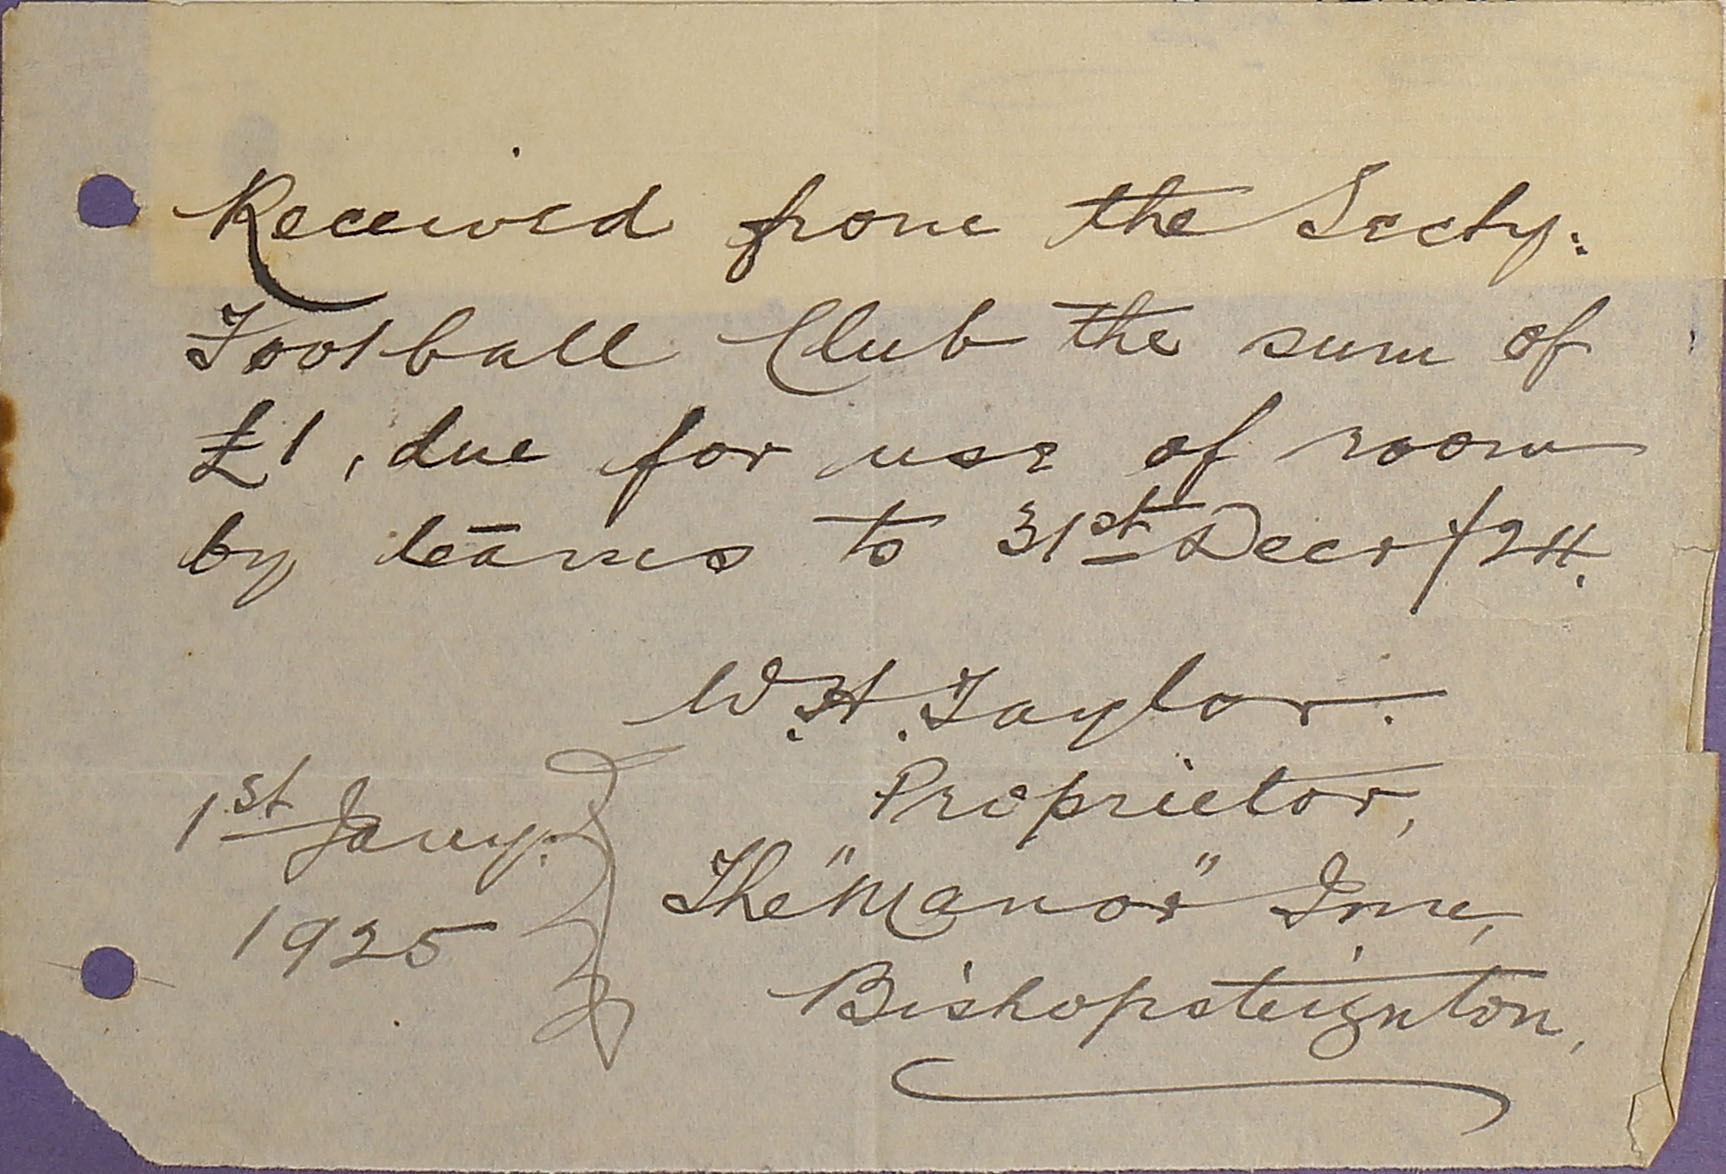 Receipt from The Manor Inn Bishopsteignton, 1925.